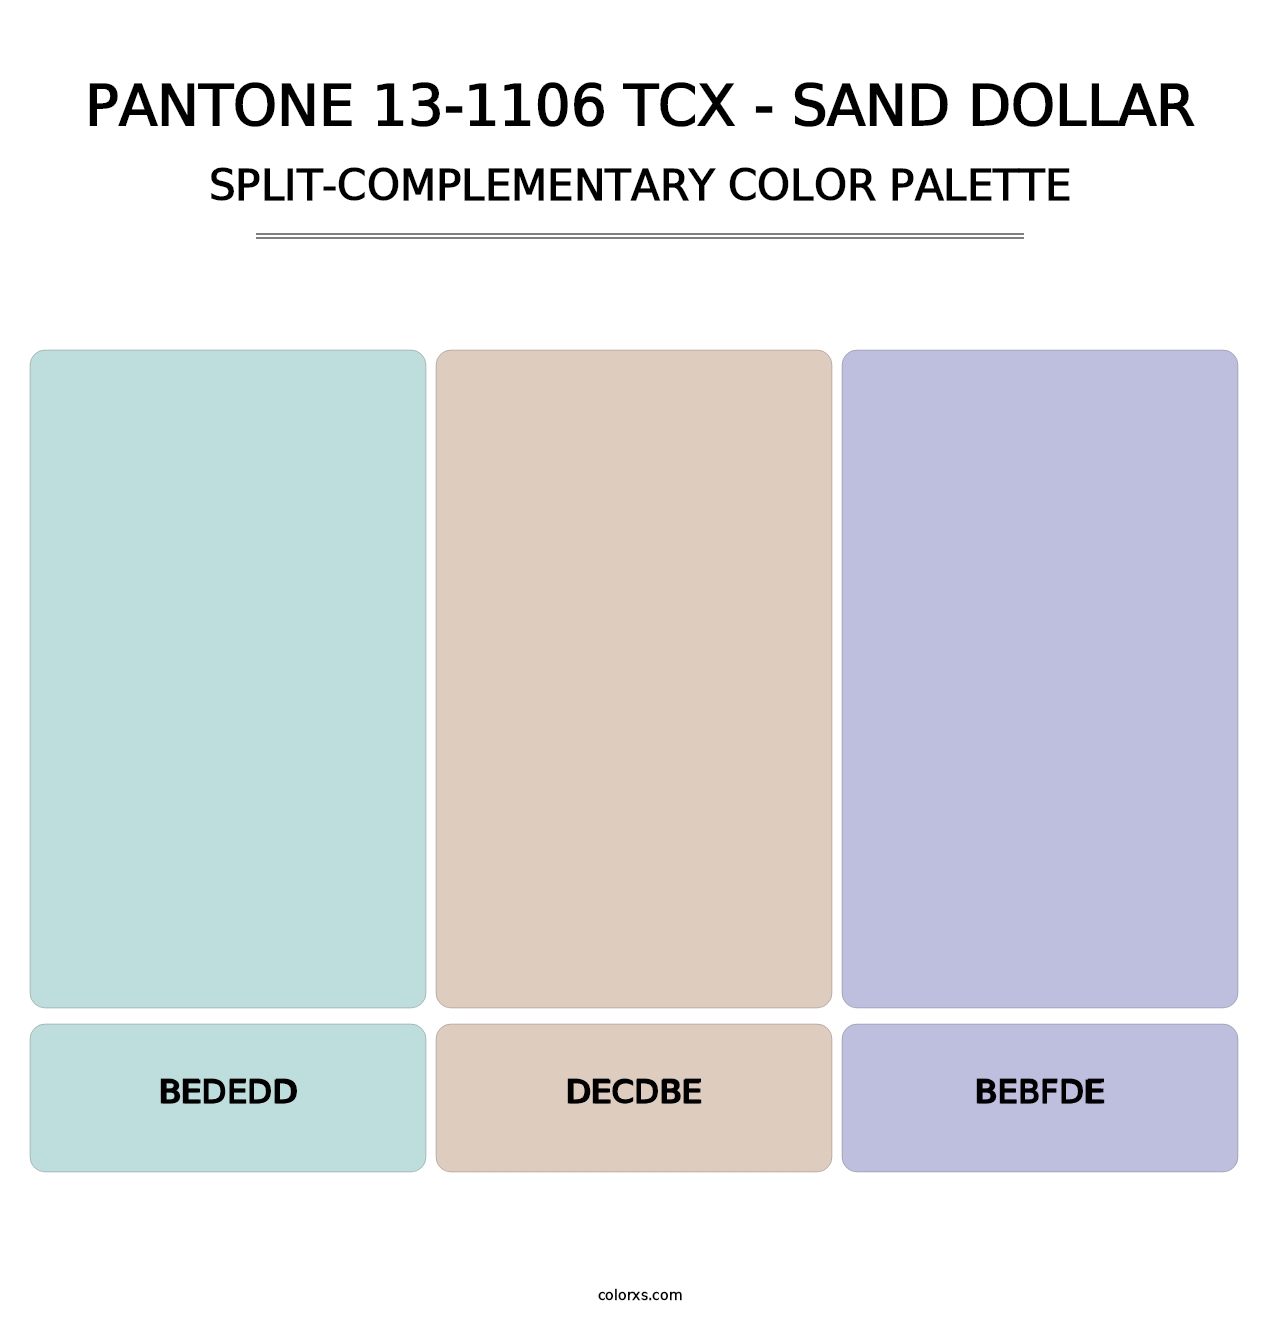 PANTONE 13-1106 TCX - Sand Dollar - Split-Complementary Color Palette